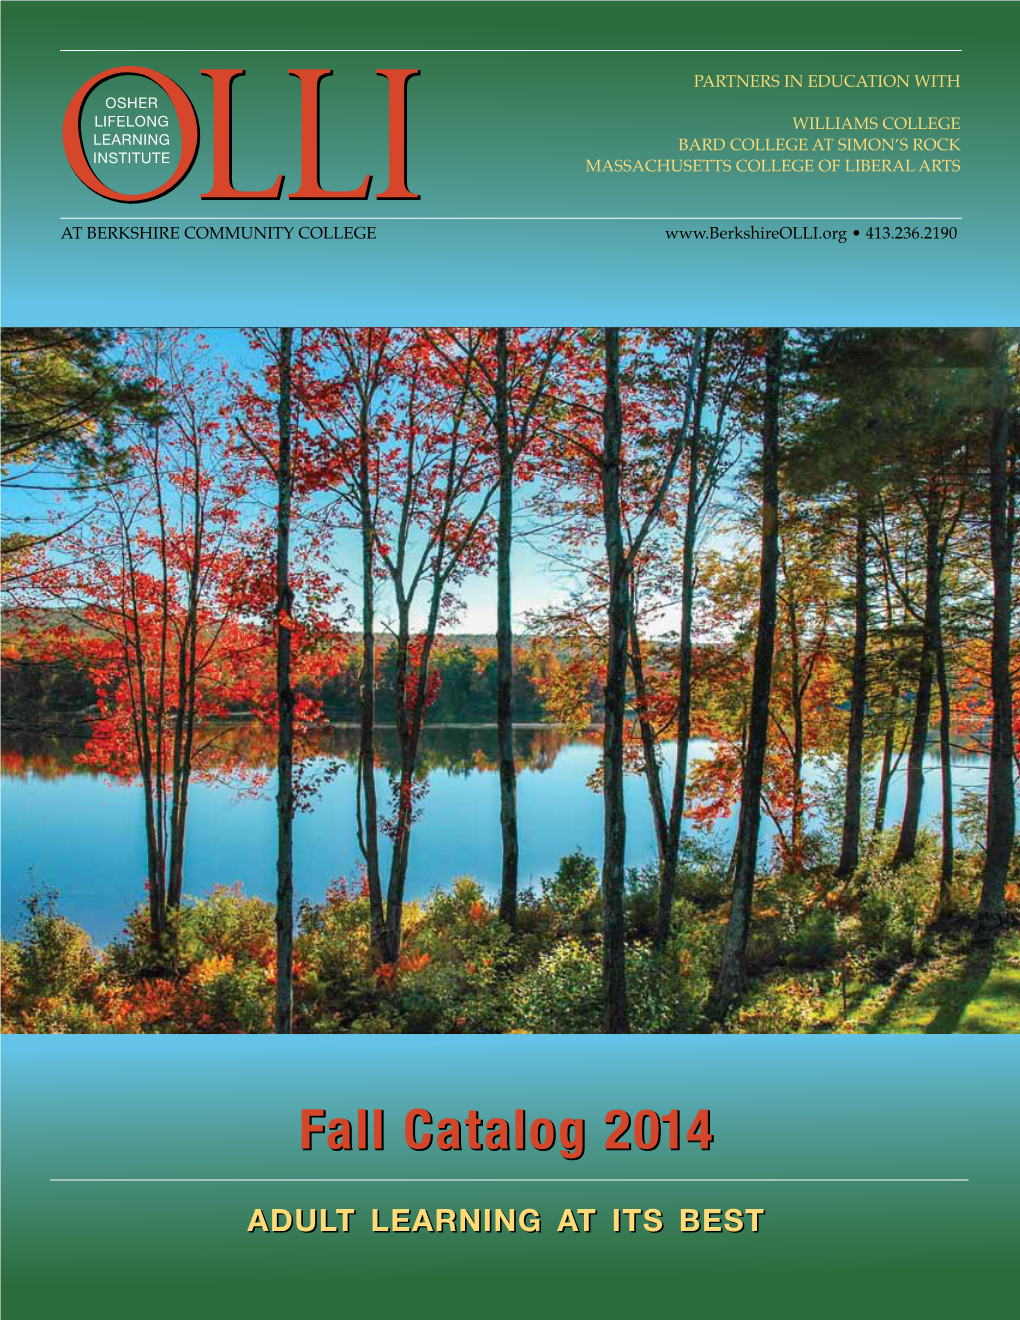 Fall Catalog 2014